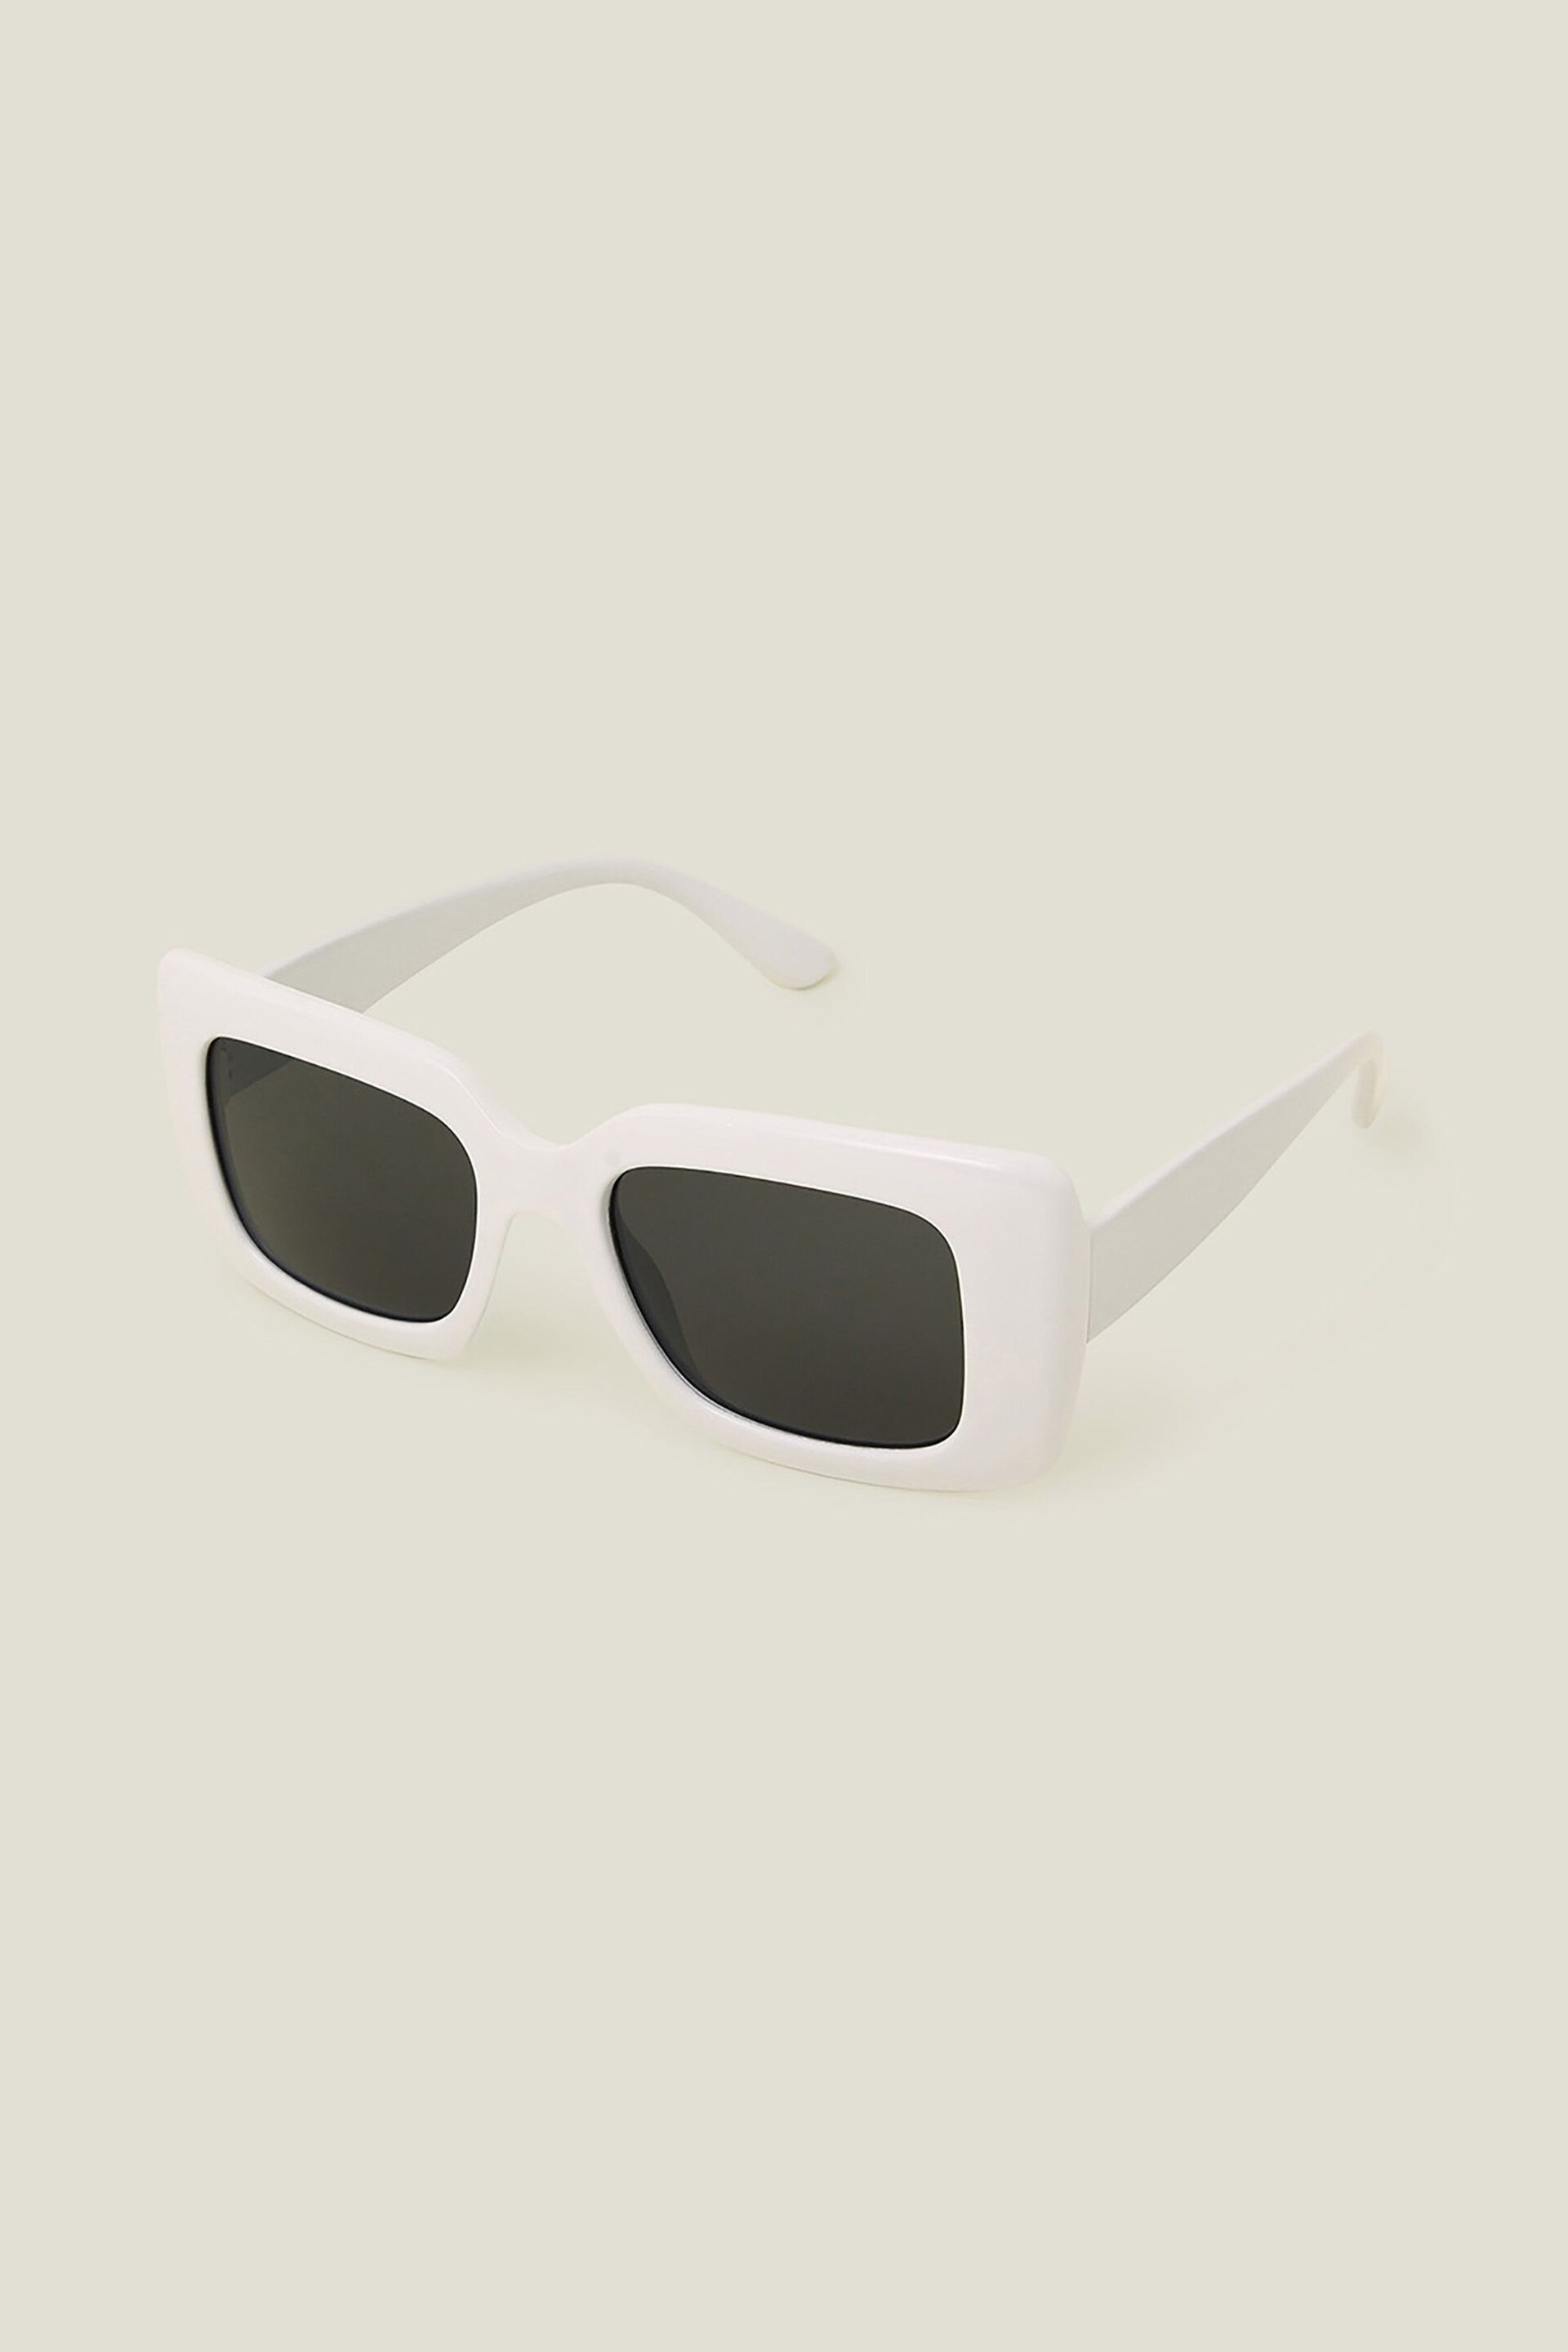 Accessorize White Soft Square Frame Sunglasses - Image 1 of 3